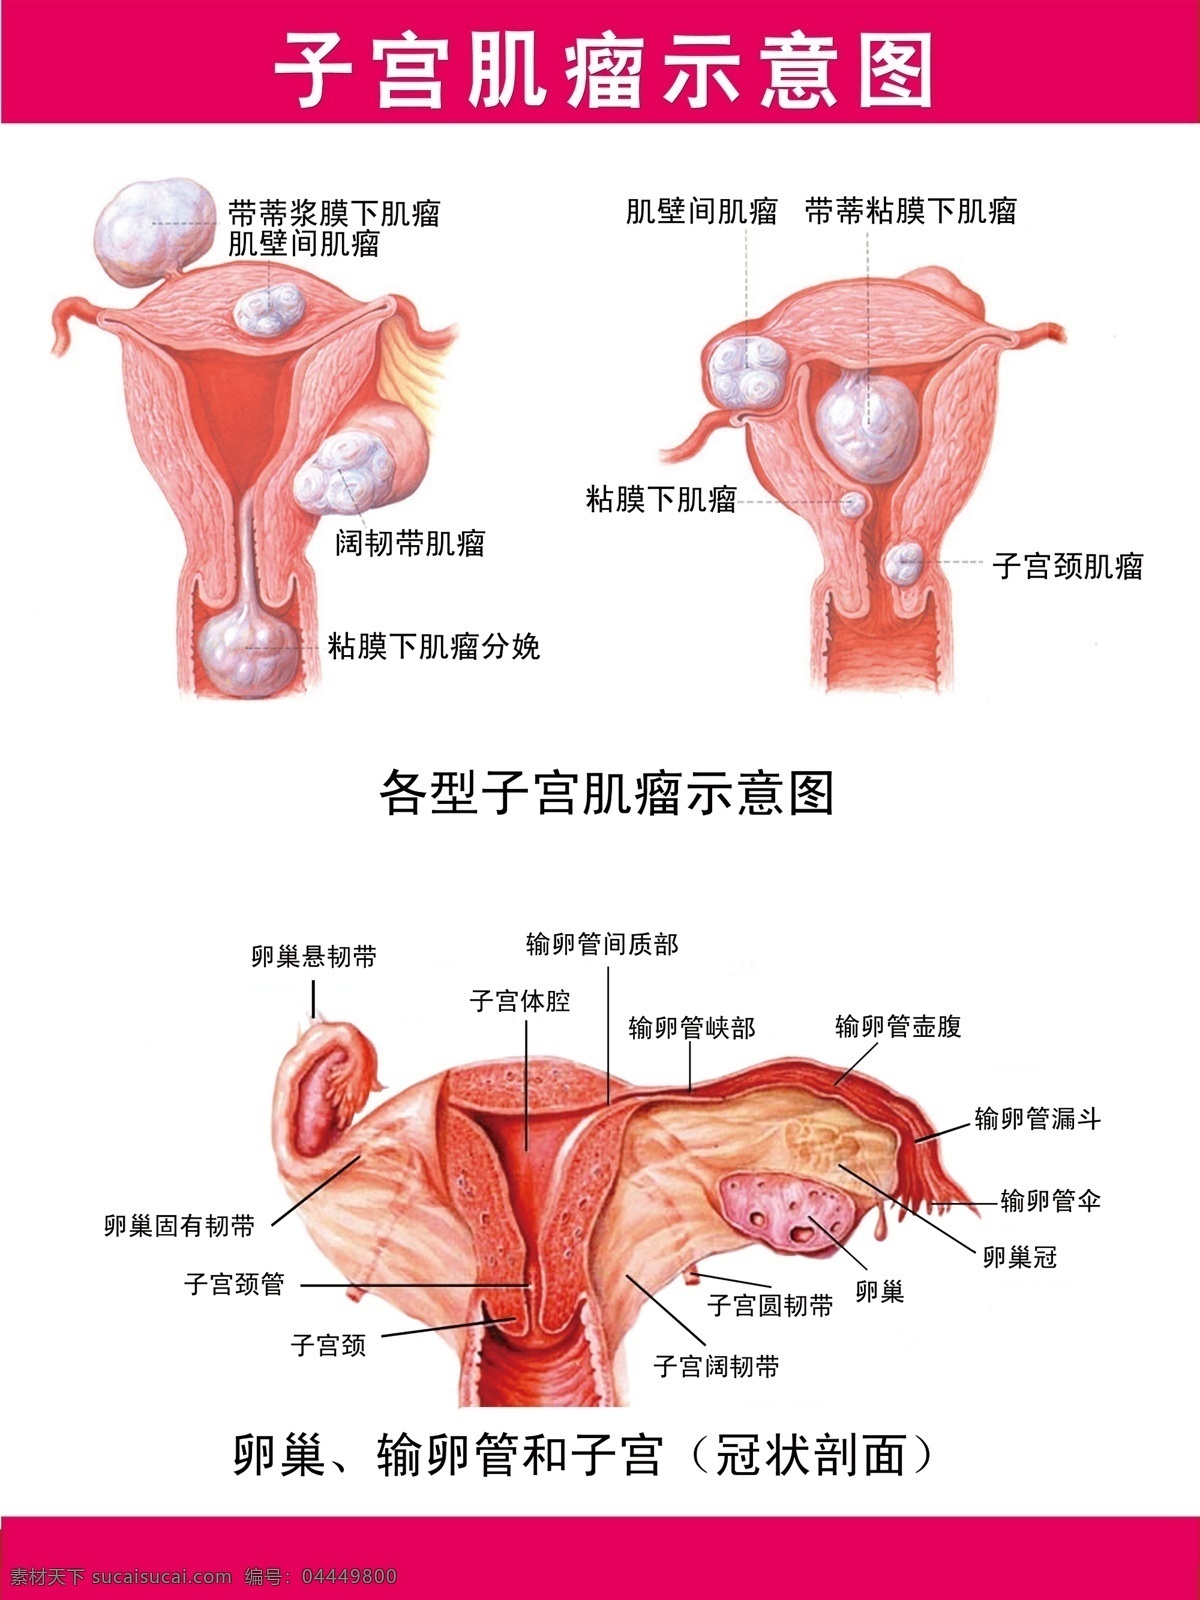 子宫肌瘤挂图 子宫肌瘤 肌瘤 子宫 示意图 展架 生活百科 医疗保健